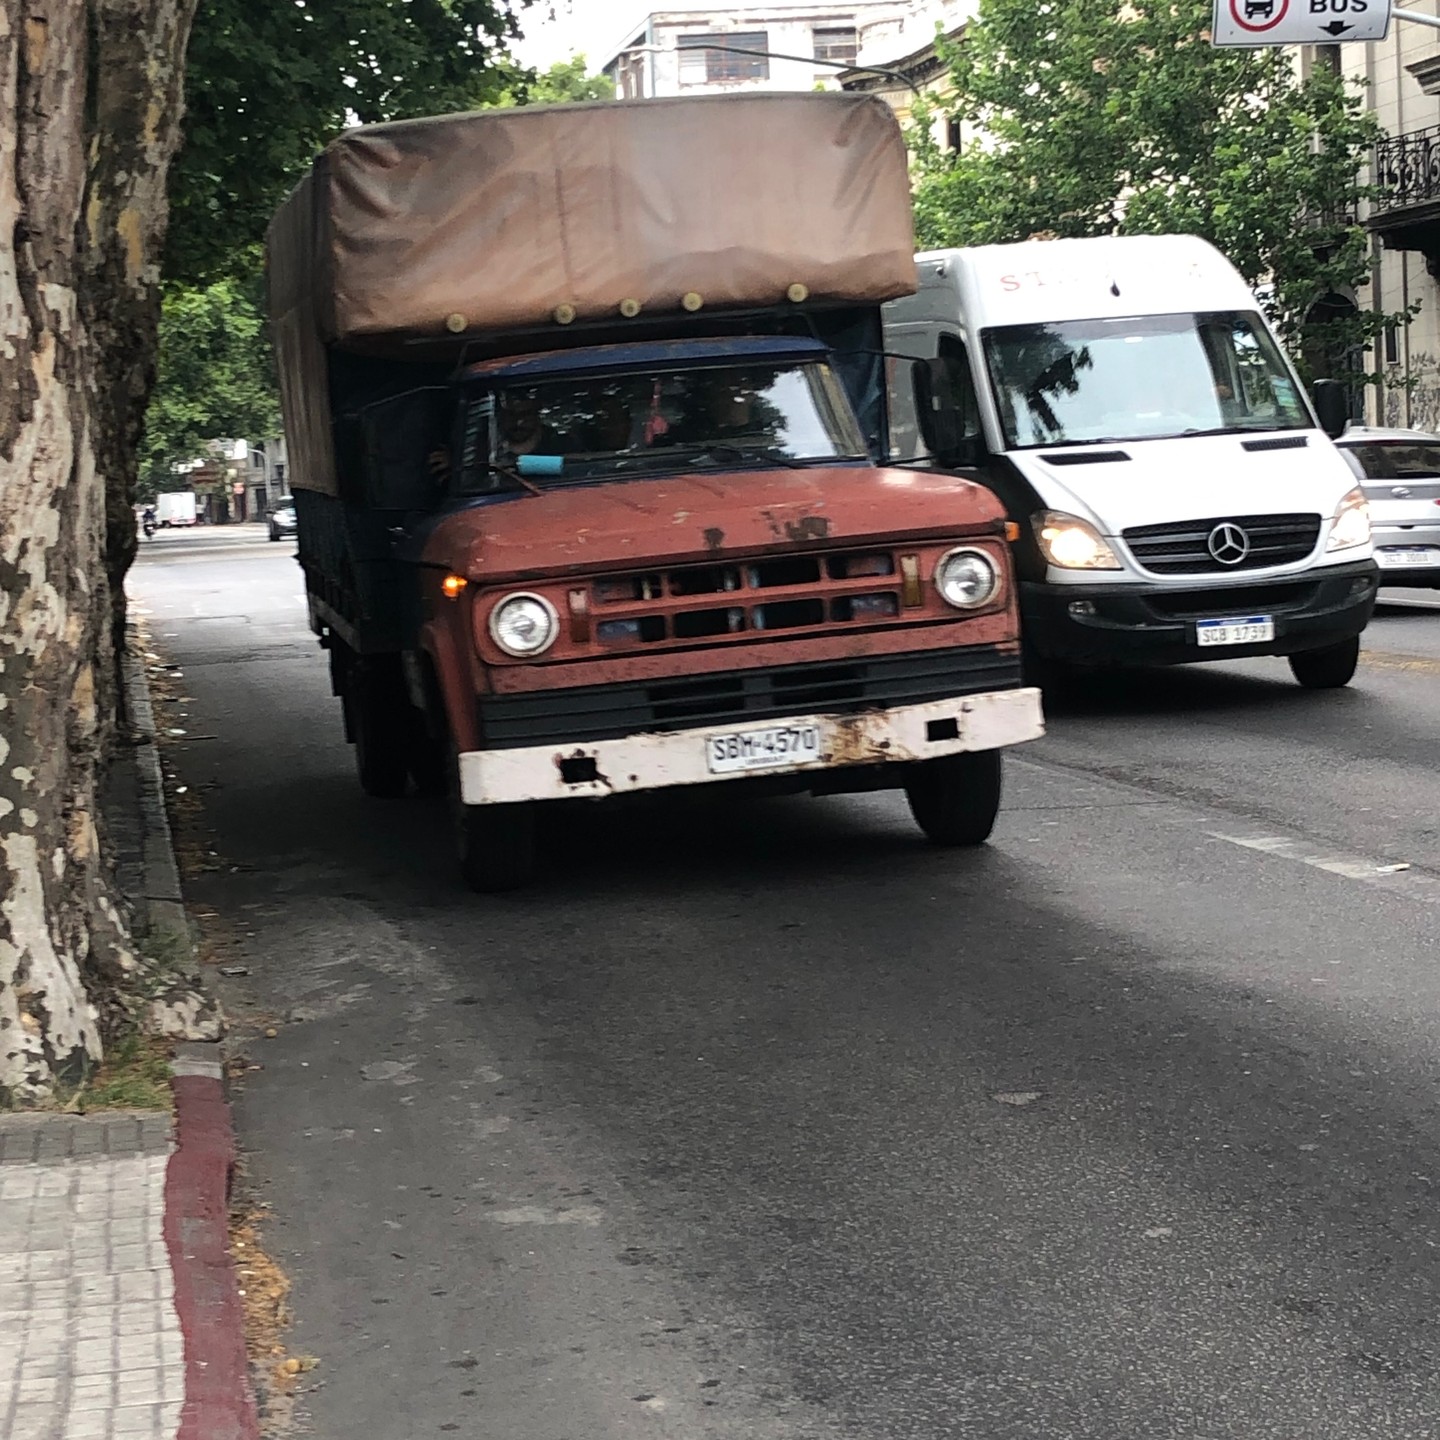 Heute auf der Strasse gesehen, ich frage mich wie lange der Transporter schon im Einsatz ist. Wann sind die gebaut worden ? Ich finde es cool. #montevideo #uruguay #transporter #reisen #unterwegs #straße #fun #leben #travel